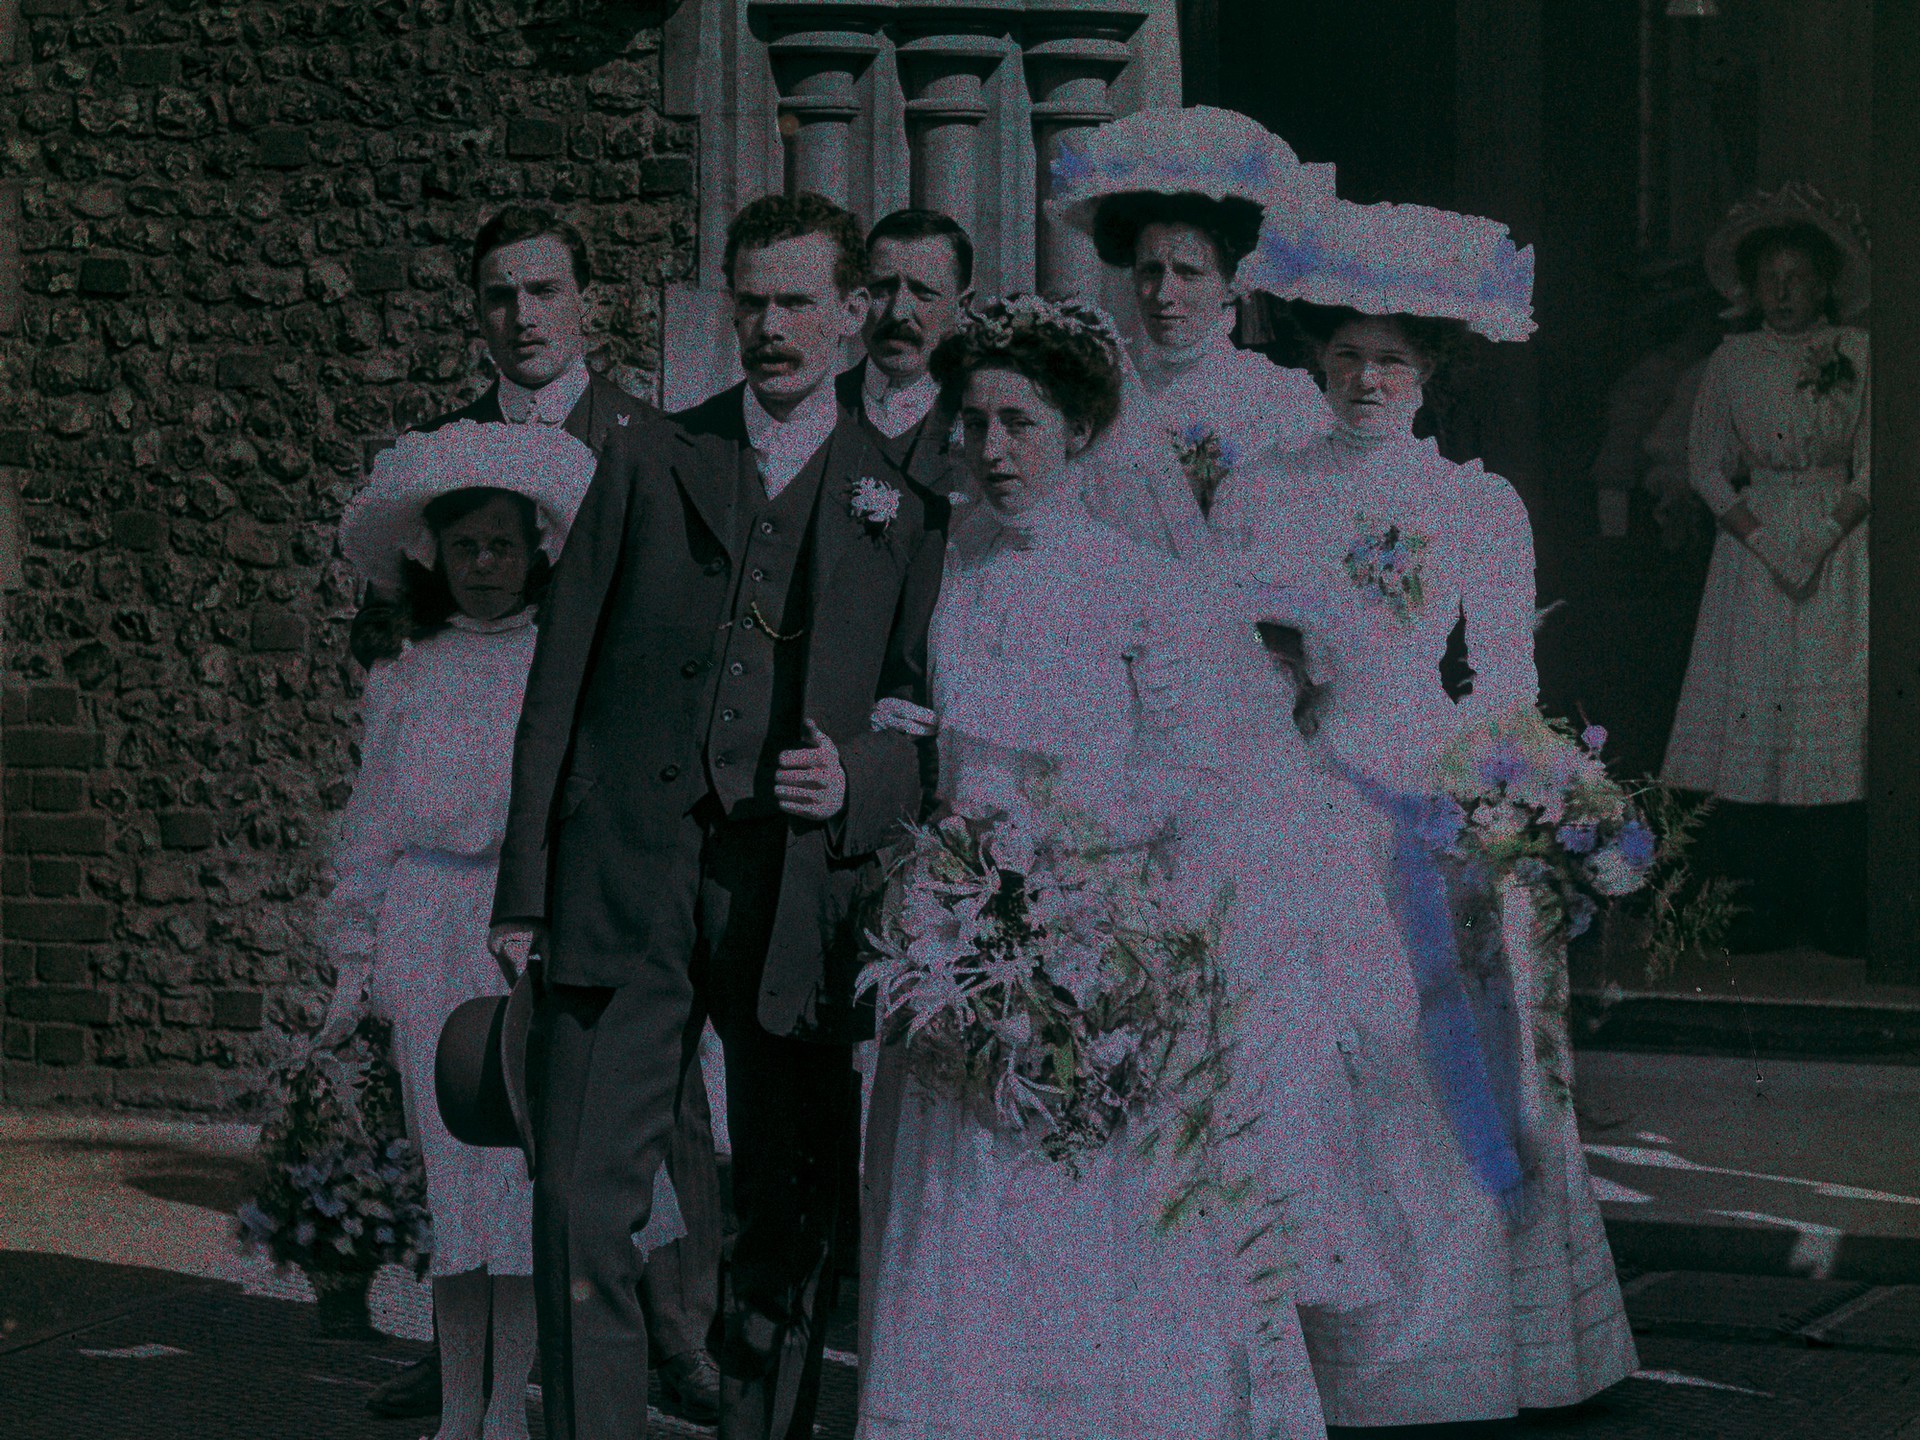 Свадьба, 1910 – 1915. Автохром, фотограф Артур Э. Мортон